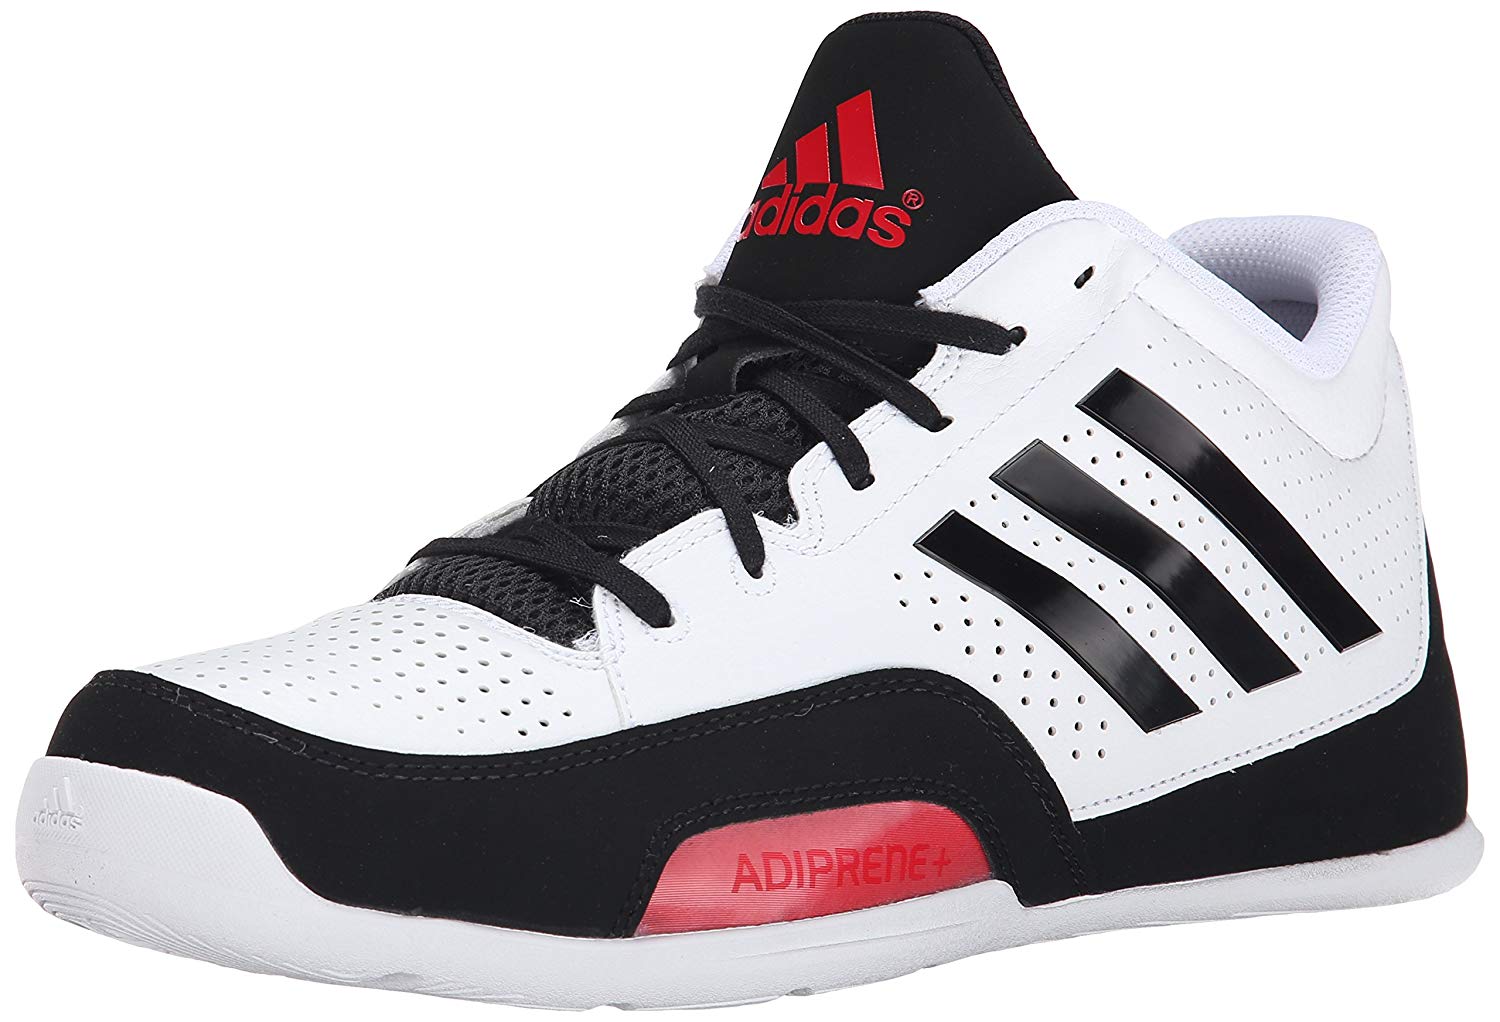 adidas adiprene basketball shoes price